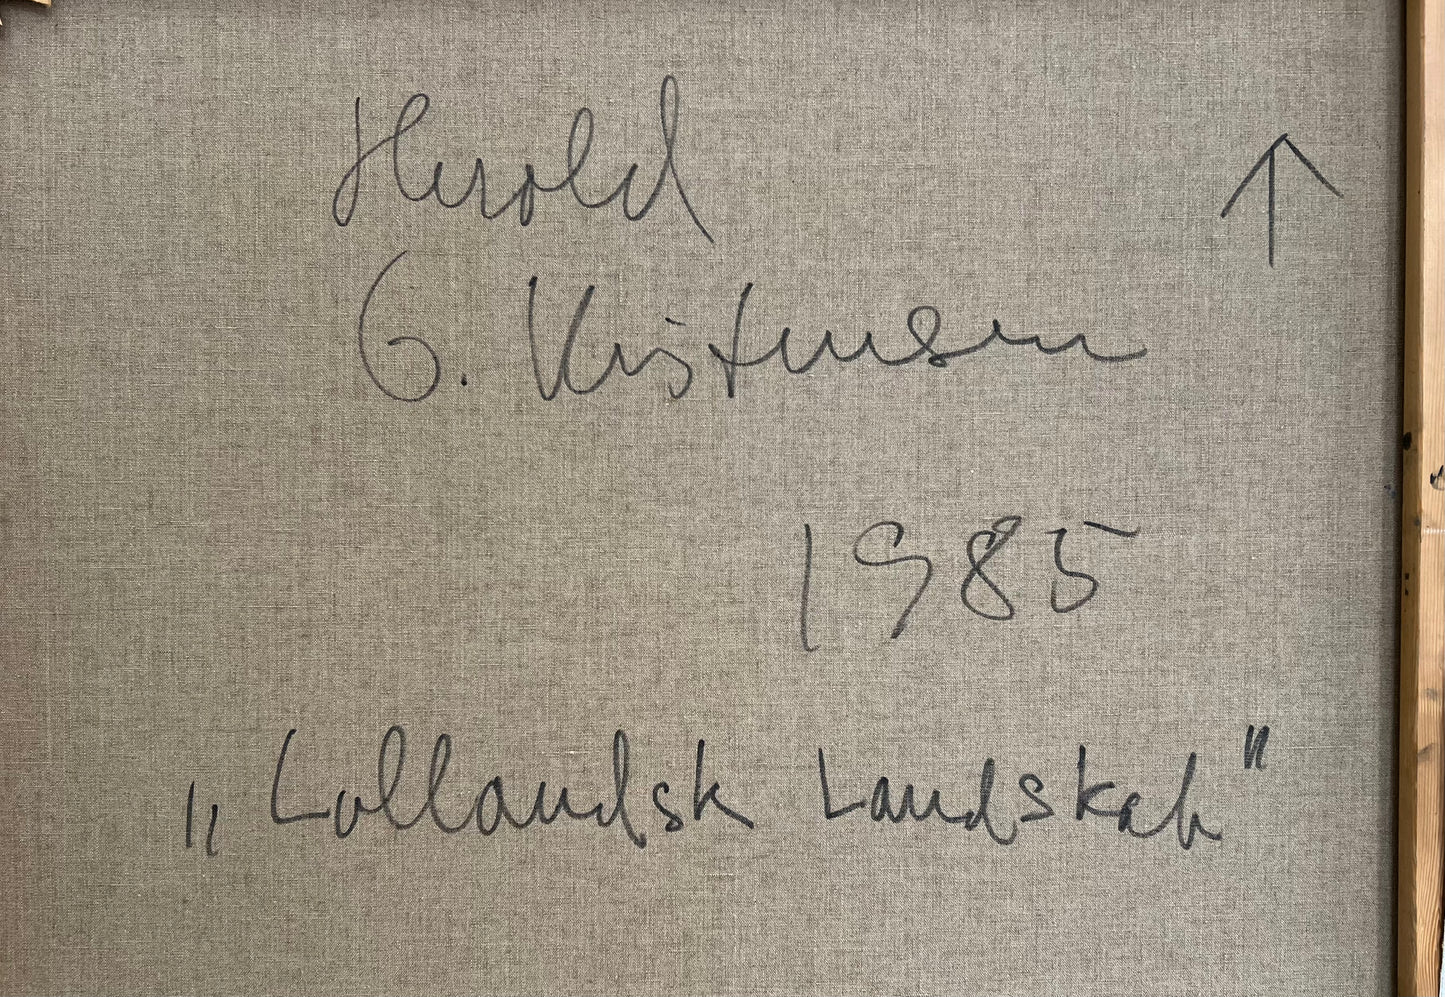 Herold G. Kristensen. “Lollandsk landskab”, 1985